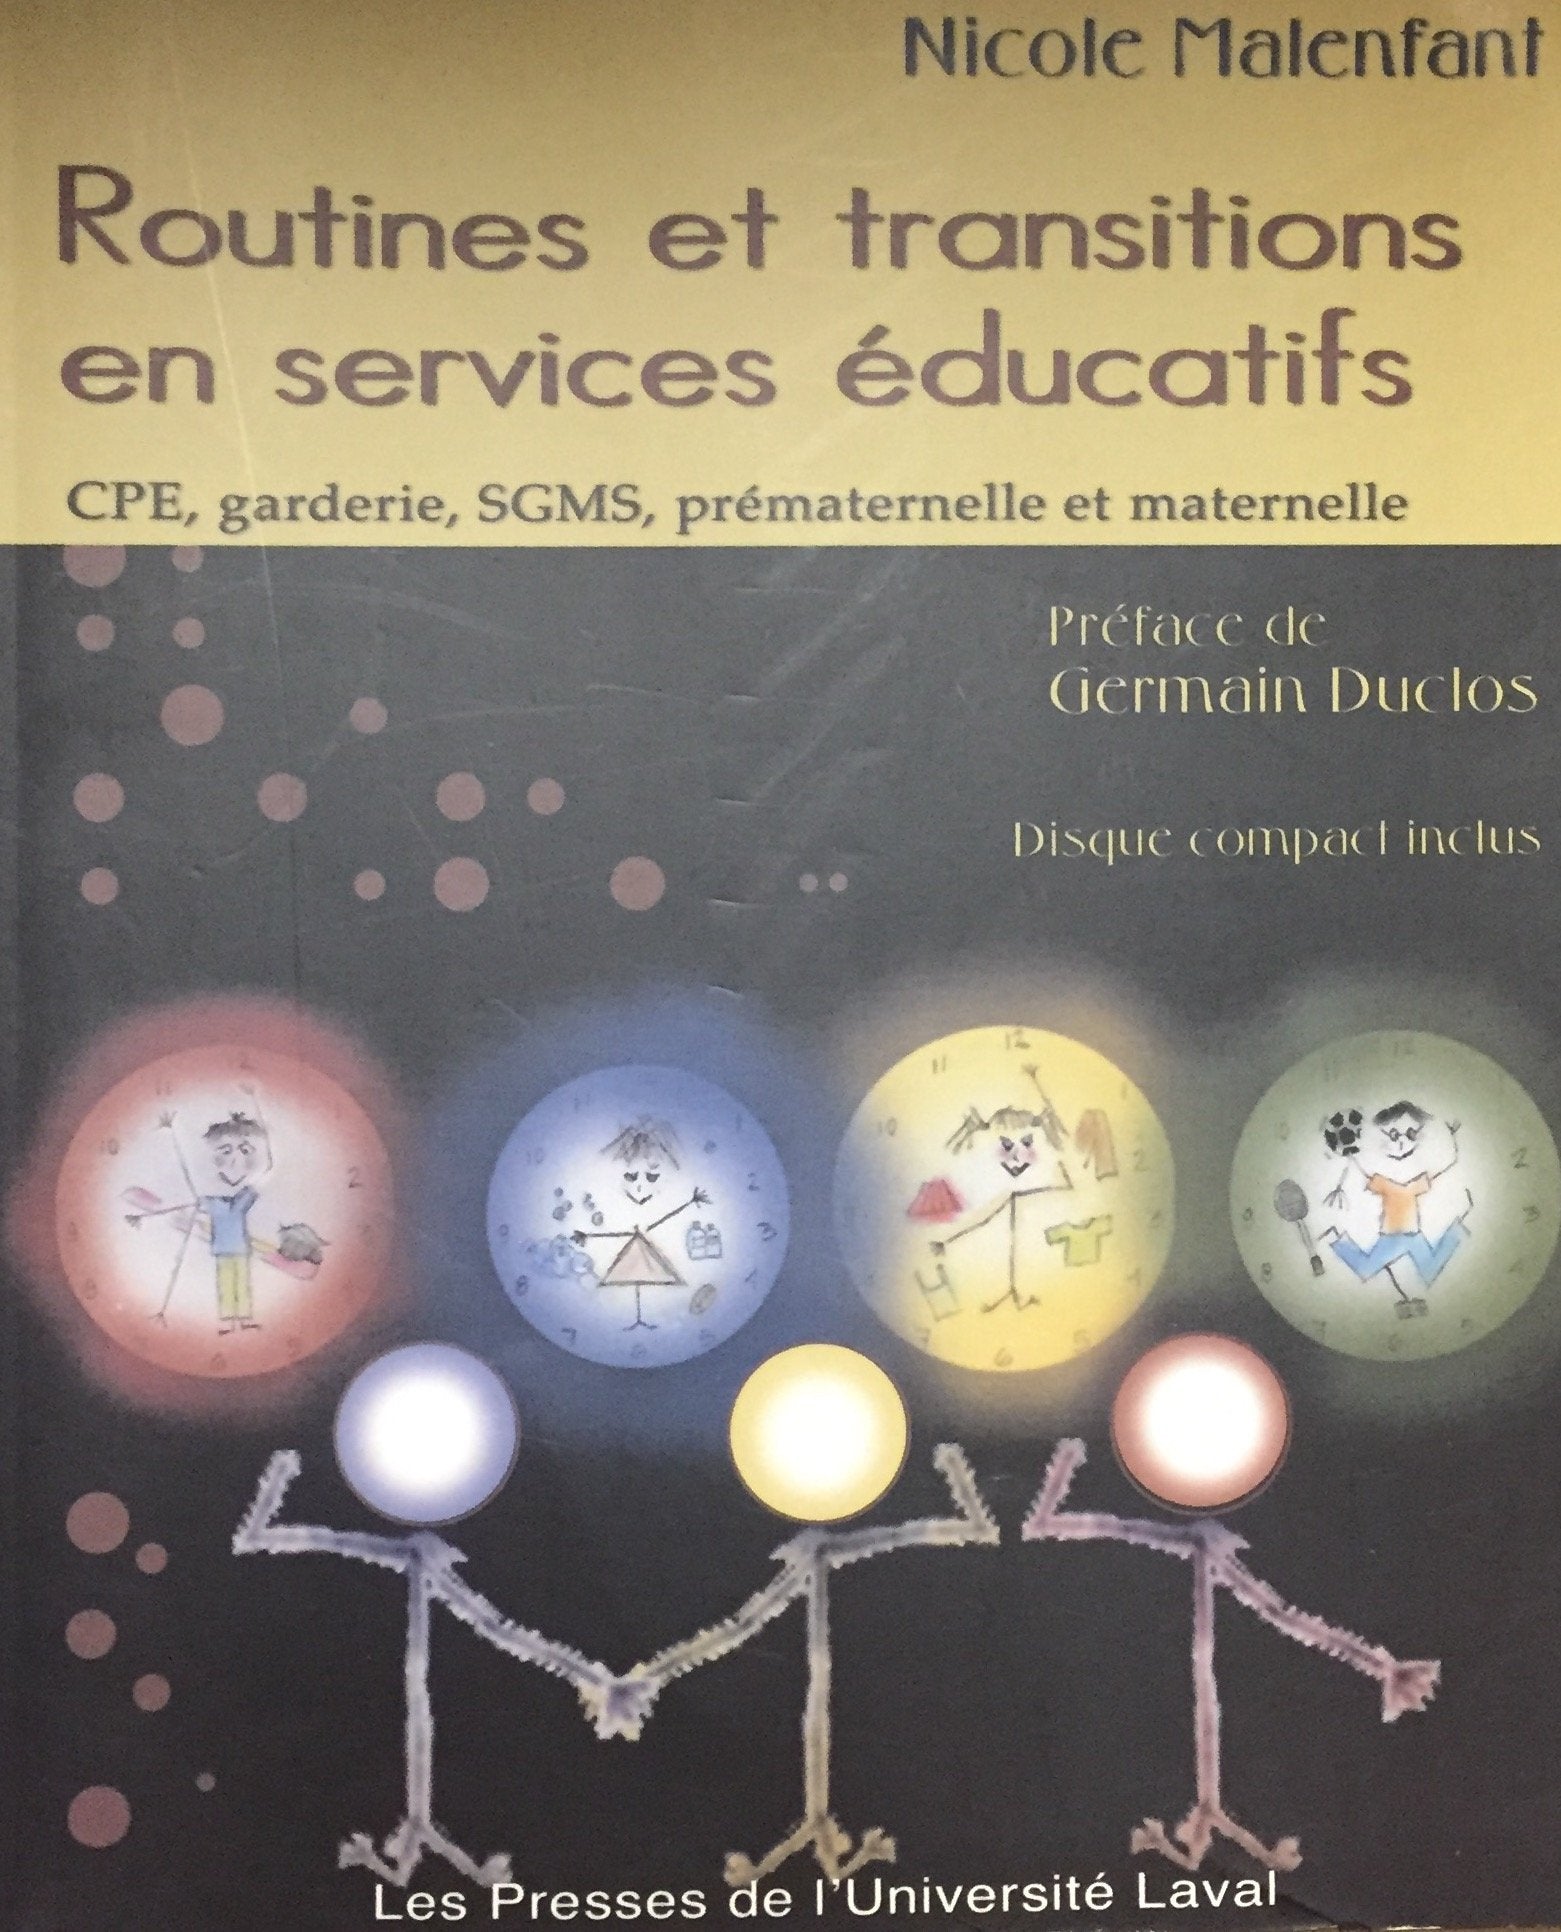 Livre ISBN 2763778550 Routines et transitions en services educatifs: CPE, garderie, SCMS, prematernelle et maternelle (Nicole Malenfant)